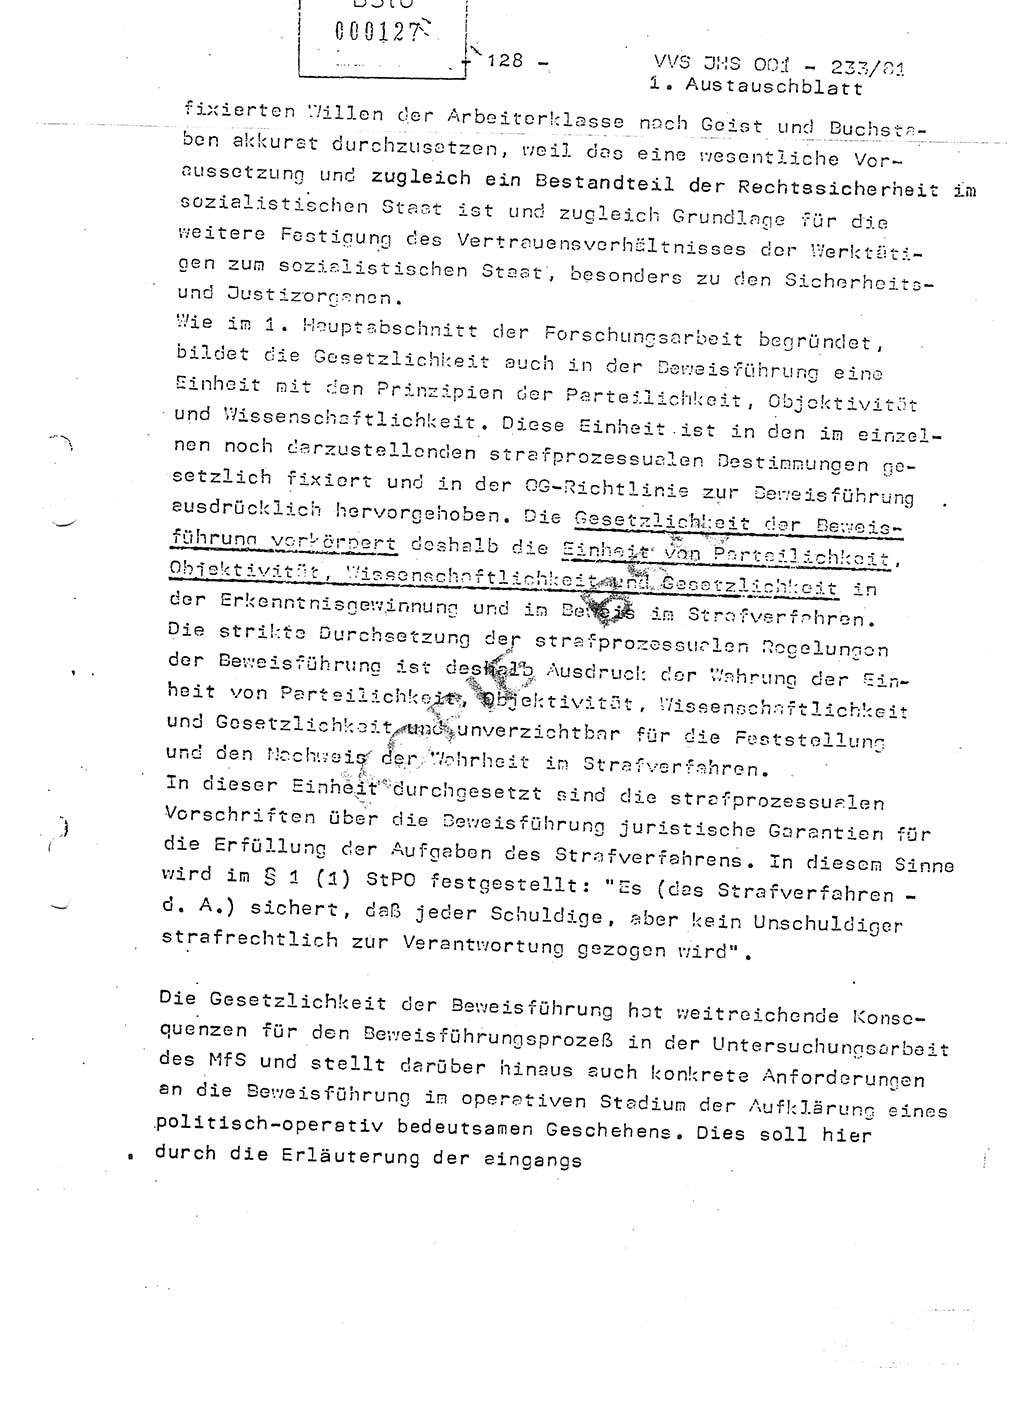 Dissertation Oberstleutnant Horst Zank (JHS), Oberstleutnant Dr. Karl-Heinz Knoblauch (JHS), Oberstleutnant Gustav-Adolf Kowalewski (HA Ⅸ), Oberstleutnant Wolfgang Plötner (HA Ⅸ), Ministerium für Staatssicherheit (MfS) [Deutsche Demokratische Republik (DDR)], Juristische Hochschule (JHS), Vertrauliche Verschlußsache (VVS) o001-233/81, Potsdam 1981, Blatt 128 (Diss. MfS DDR JHS VVS o001-233/81 1981, Bl. 128)